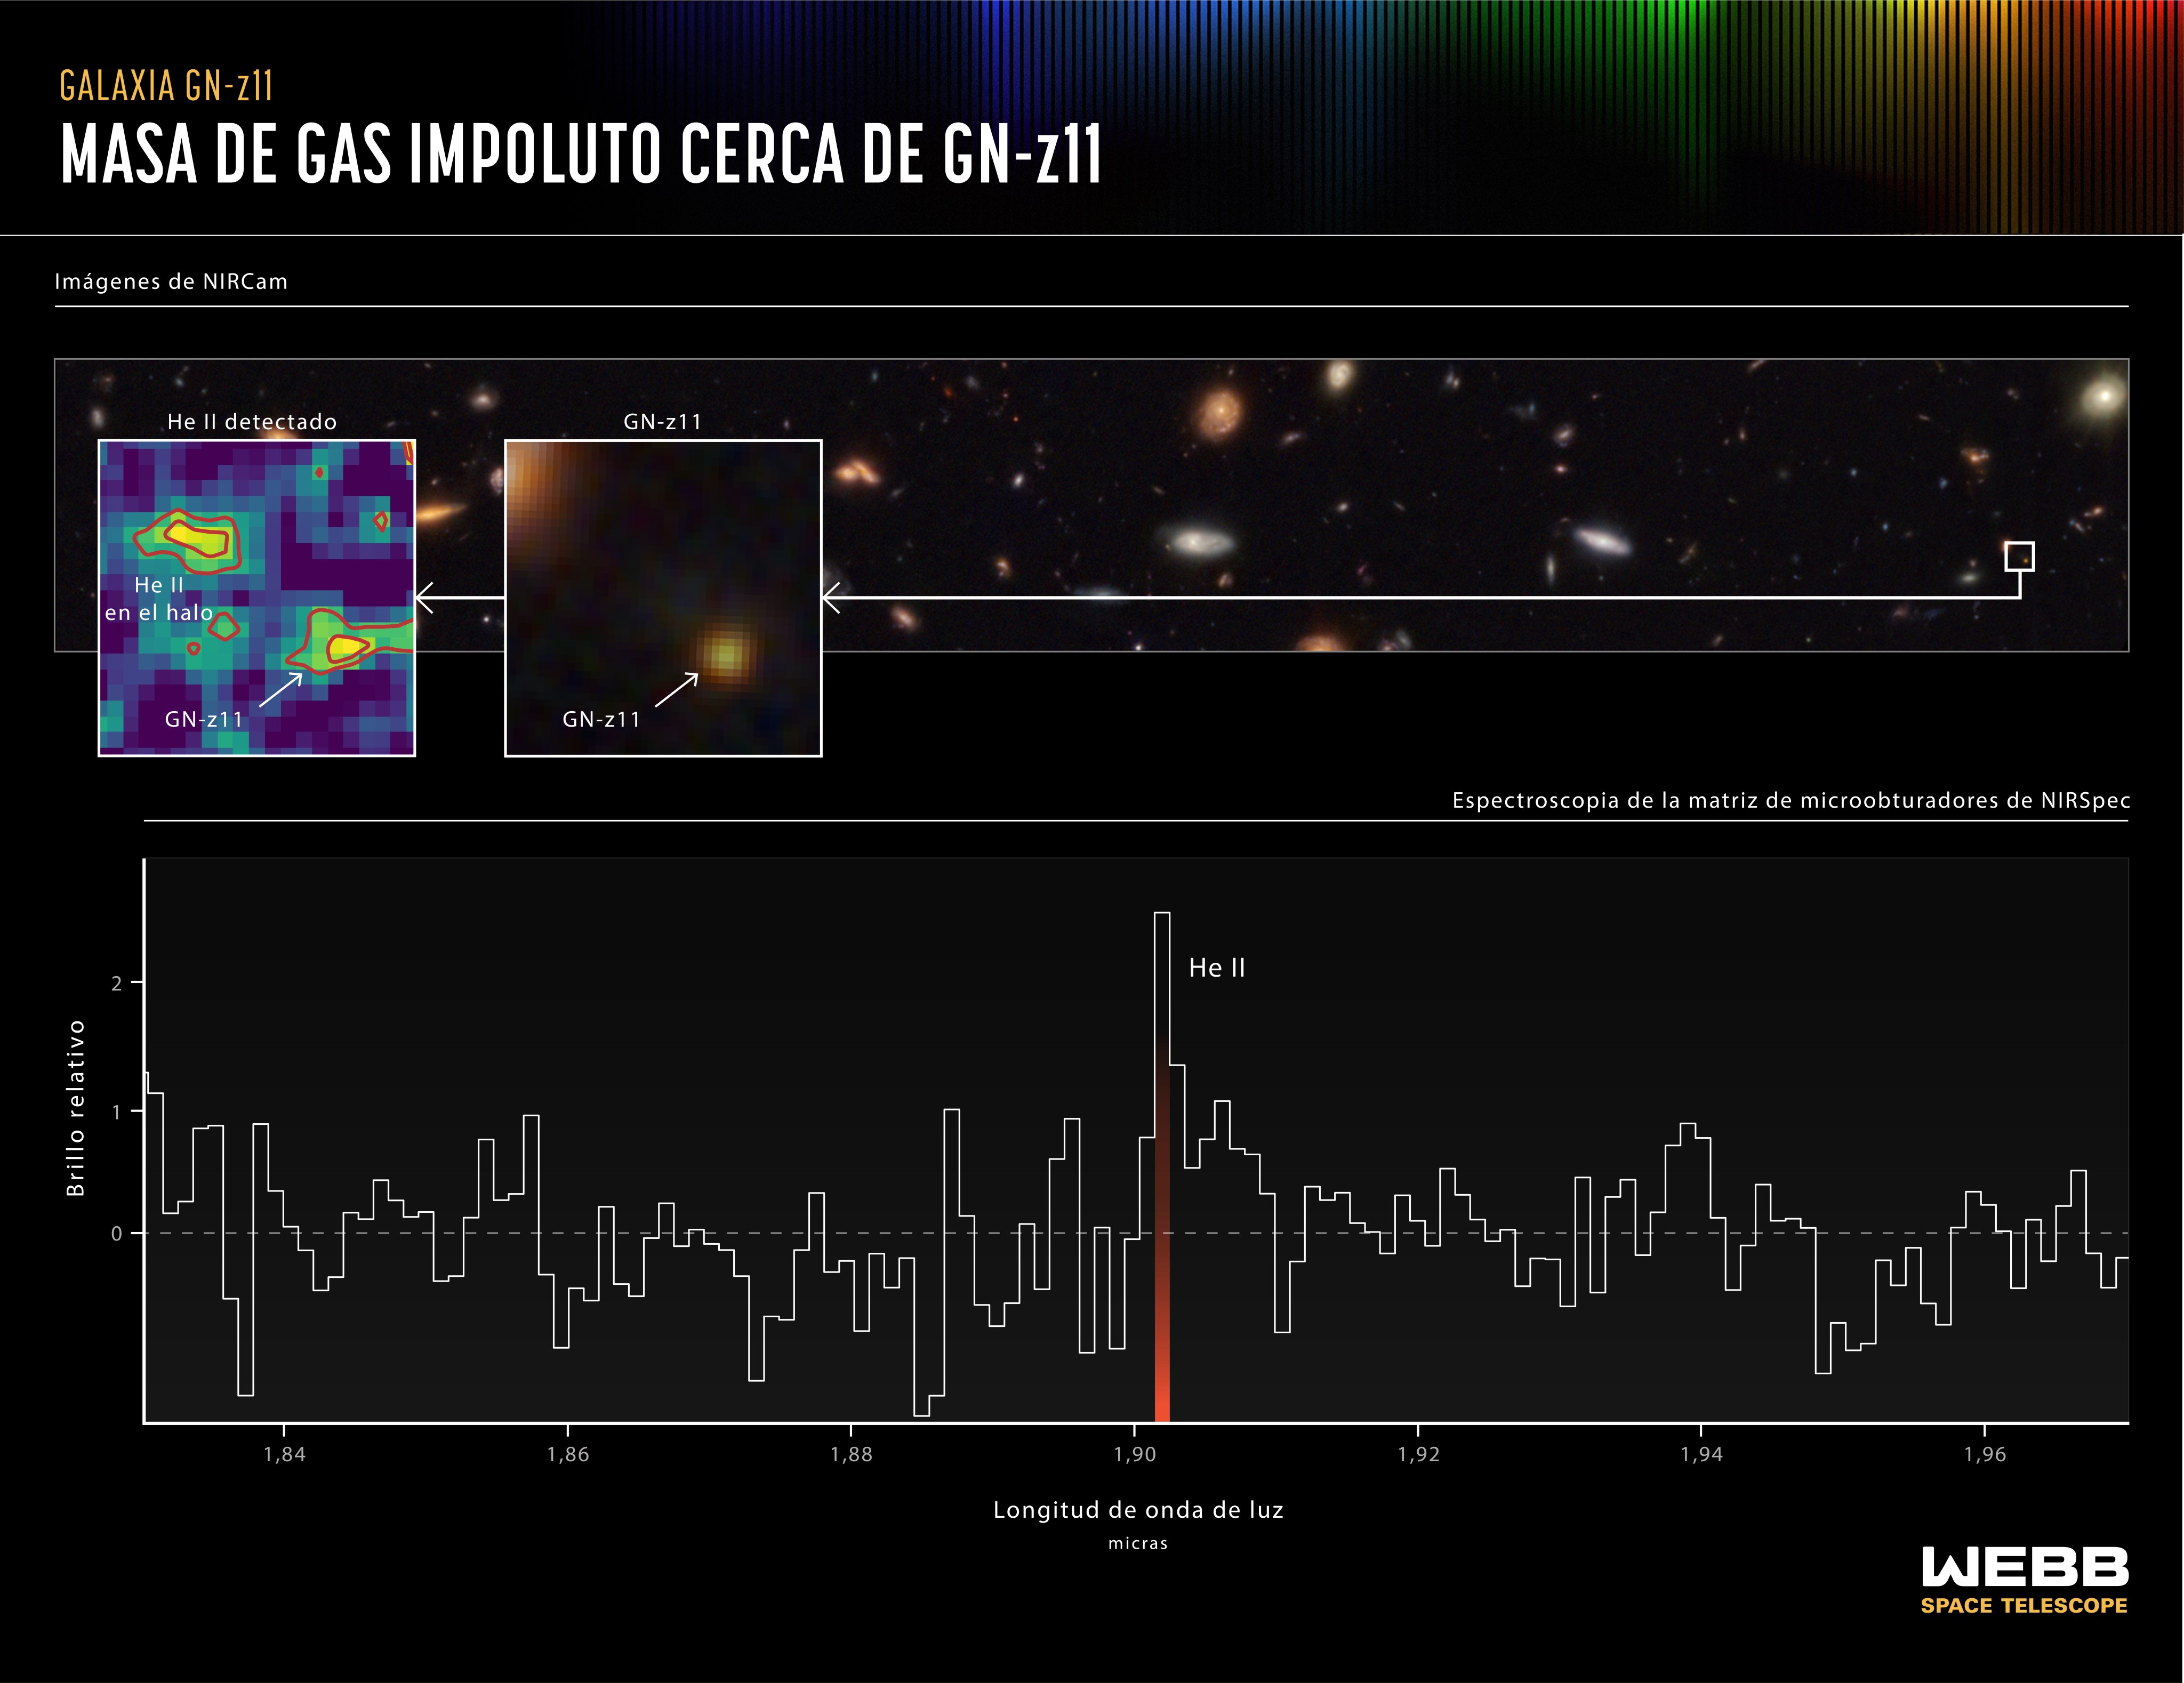 Esta gráfica dividida en dos partes muestra evidencia de una masa gaseosa de helio en el halo que rodea a la galaxia GN-z11. En la parte superior, en el extremo derecho, un pequeño recuadro identifica a GN-z11 en un campo de galaxias. El recuadro central muestra una imagen ampliada de la galaxia. El recuadro en el extremo izquierdo muestra un mapa del gas helio en el halo de GN-z11, incluyendo una masa gaseosa que no aparece en la vista de colores infrarrojos que se muestran en el panel central. En la mitad inferior de la gráfica, un espectro muestra la “huella” distintiva del helio en el halo. El espectro completo no muestra evidencia de otros elementos, por lo que sugiere que la masa de helio debe ser relativamente impoluta, hecha de hidrógeno y helio gaseoso sobrante del Big Bang, sin mucha contaminación de elementos más pesados producidos por las estrellas. La teoría y las simulaciones desarrolladas en las cercanías de galaxias particularmente masivas de estas épocas predicen que debería haber bolsas de gas impoluto que sobreviven en el halo, y estas pueden colapsar y formar cúmulos de estrellas de la población III.